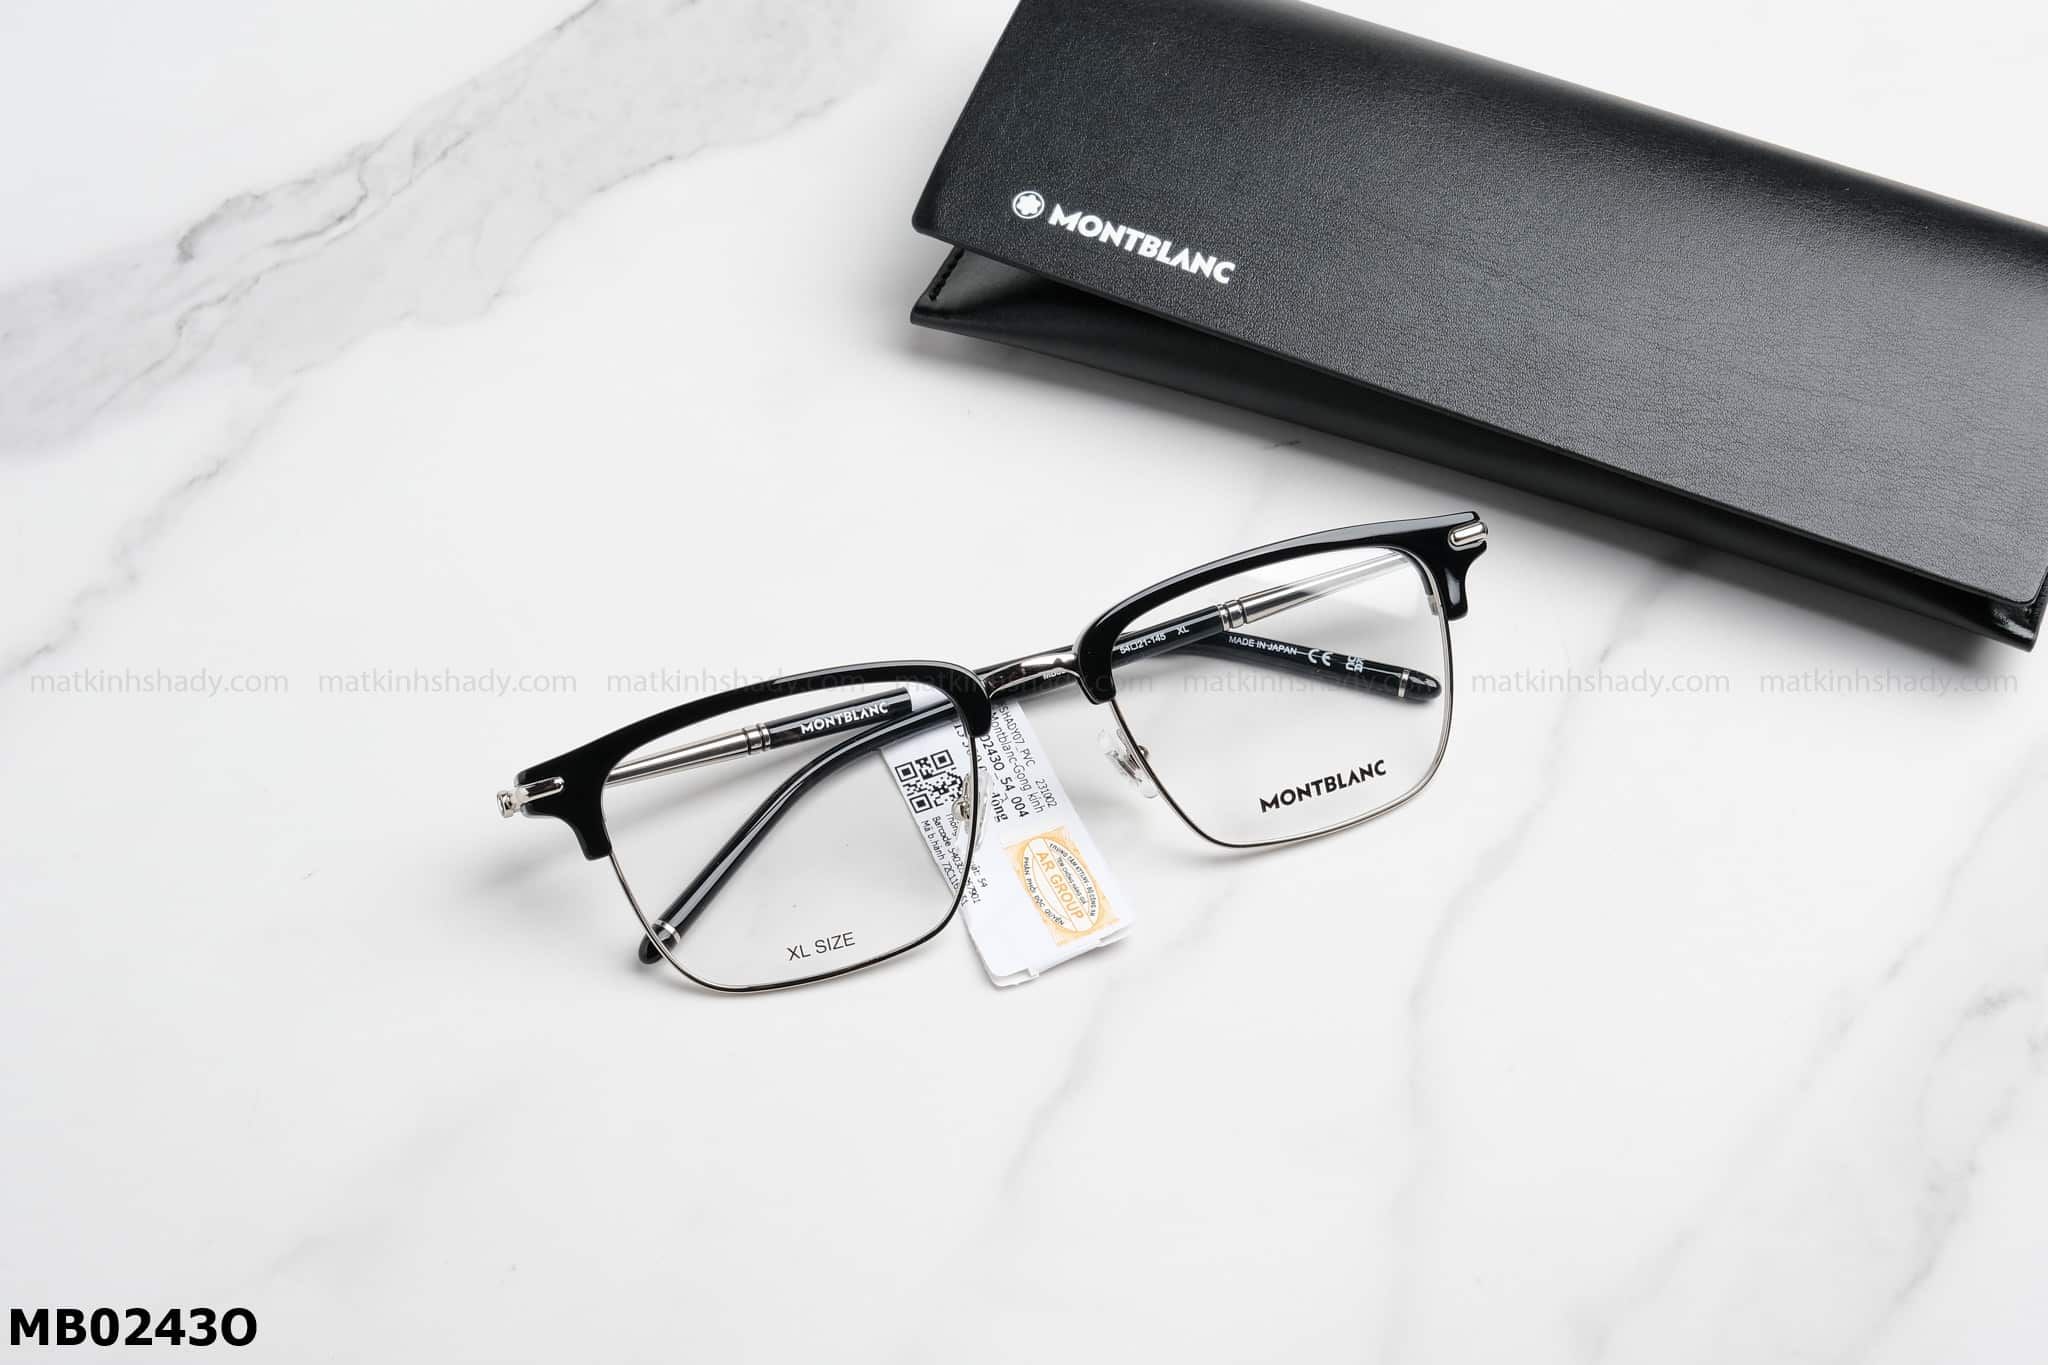  Montblanc Eyewear - Glasses - MB0243O 